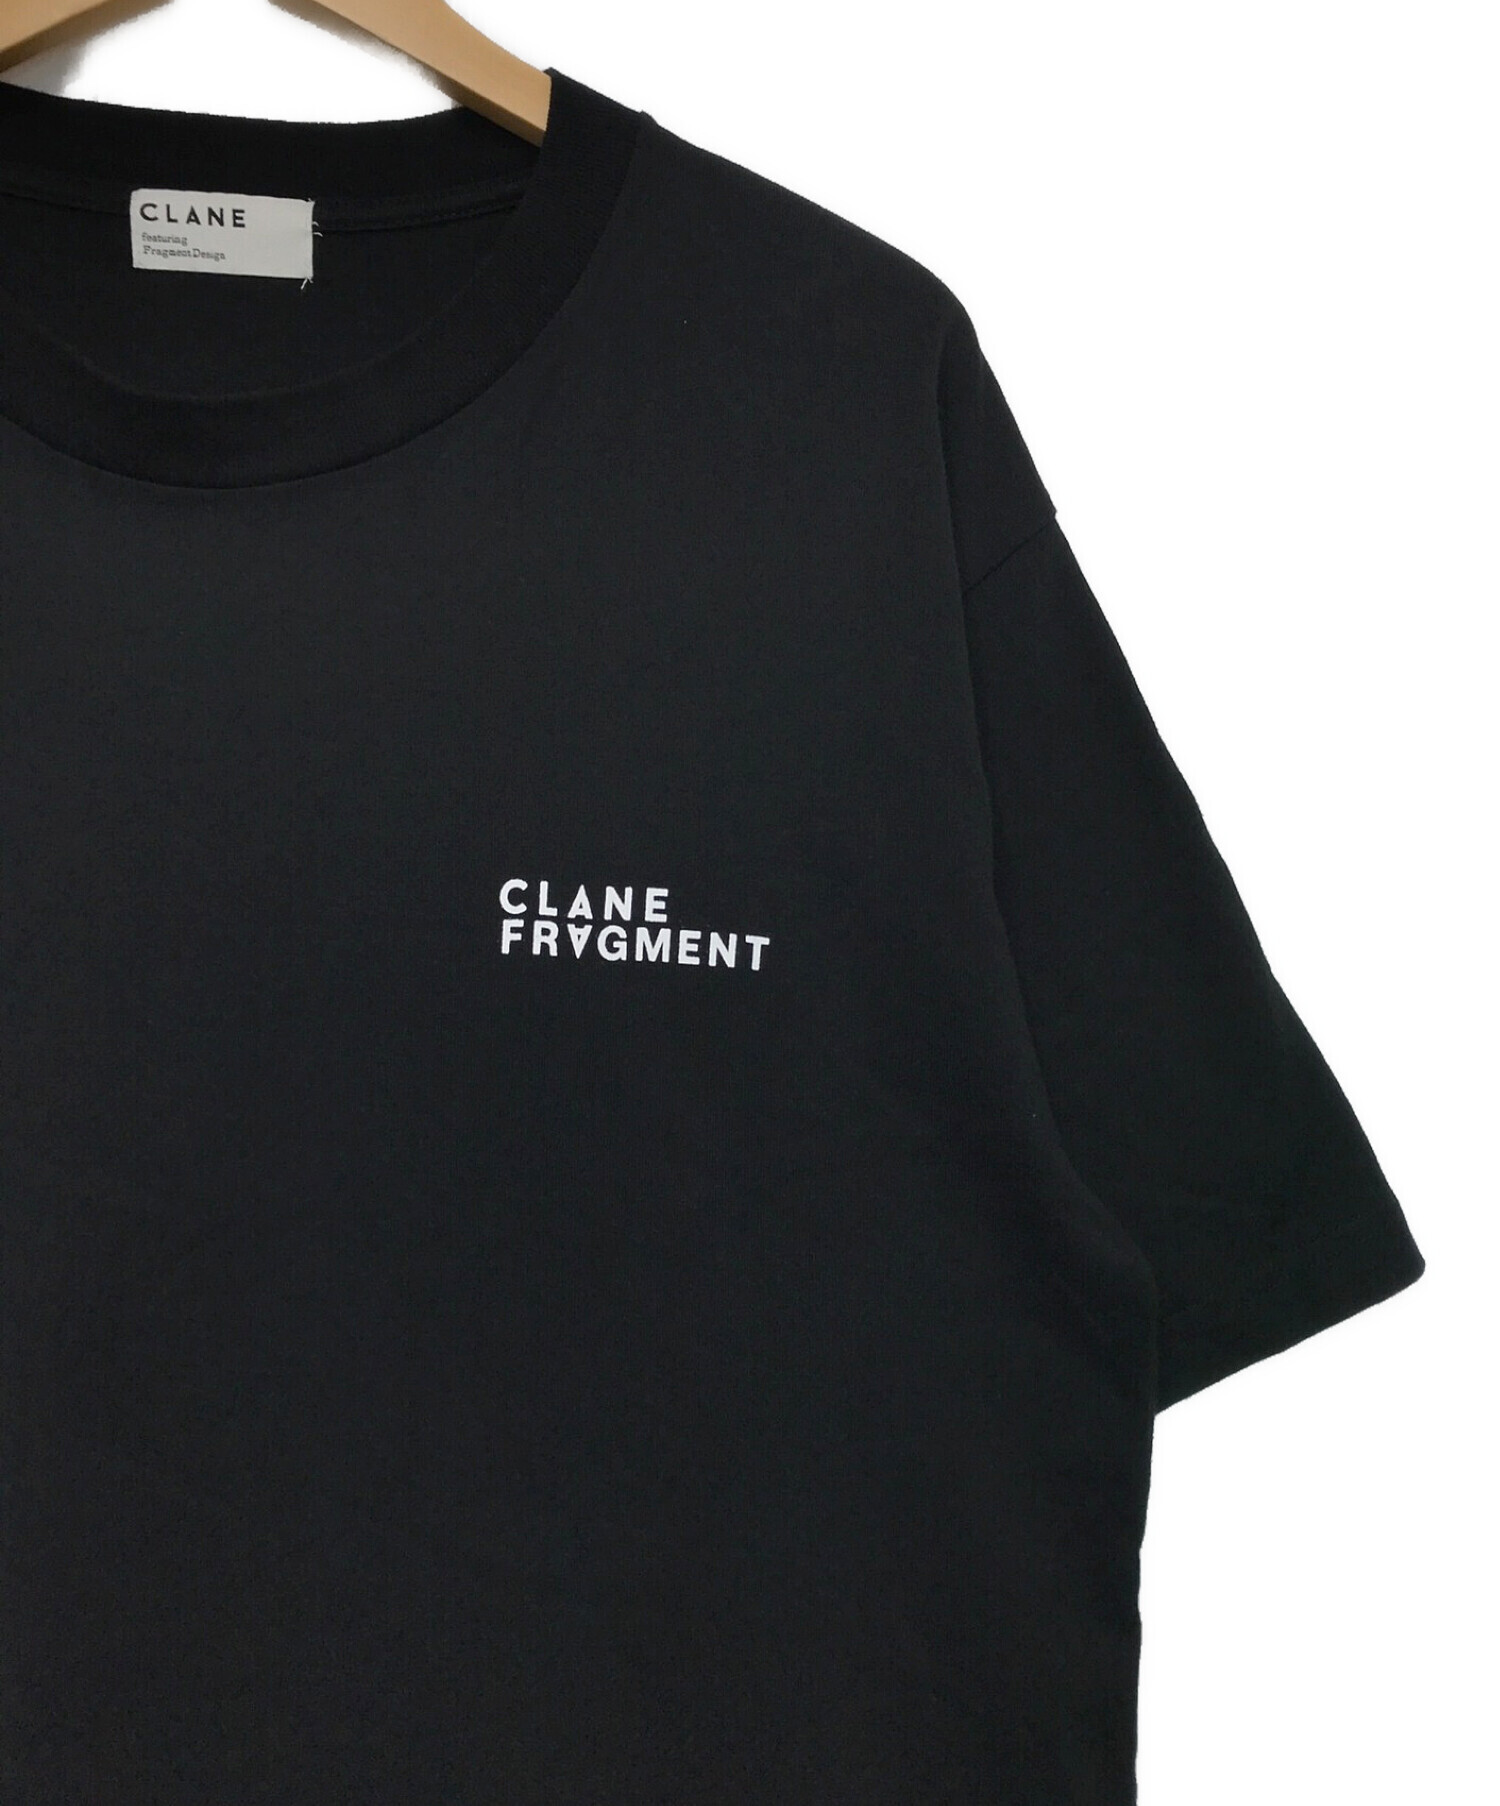 中古・古着通販】FRAGMENT×CLANE (フラグメント×クラネ) Tシャツ 